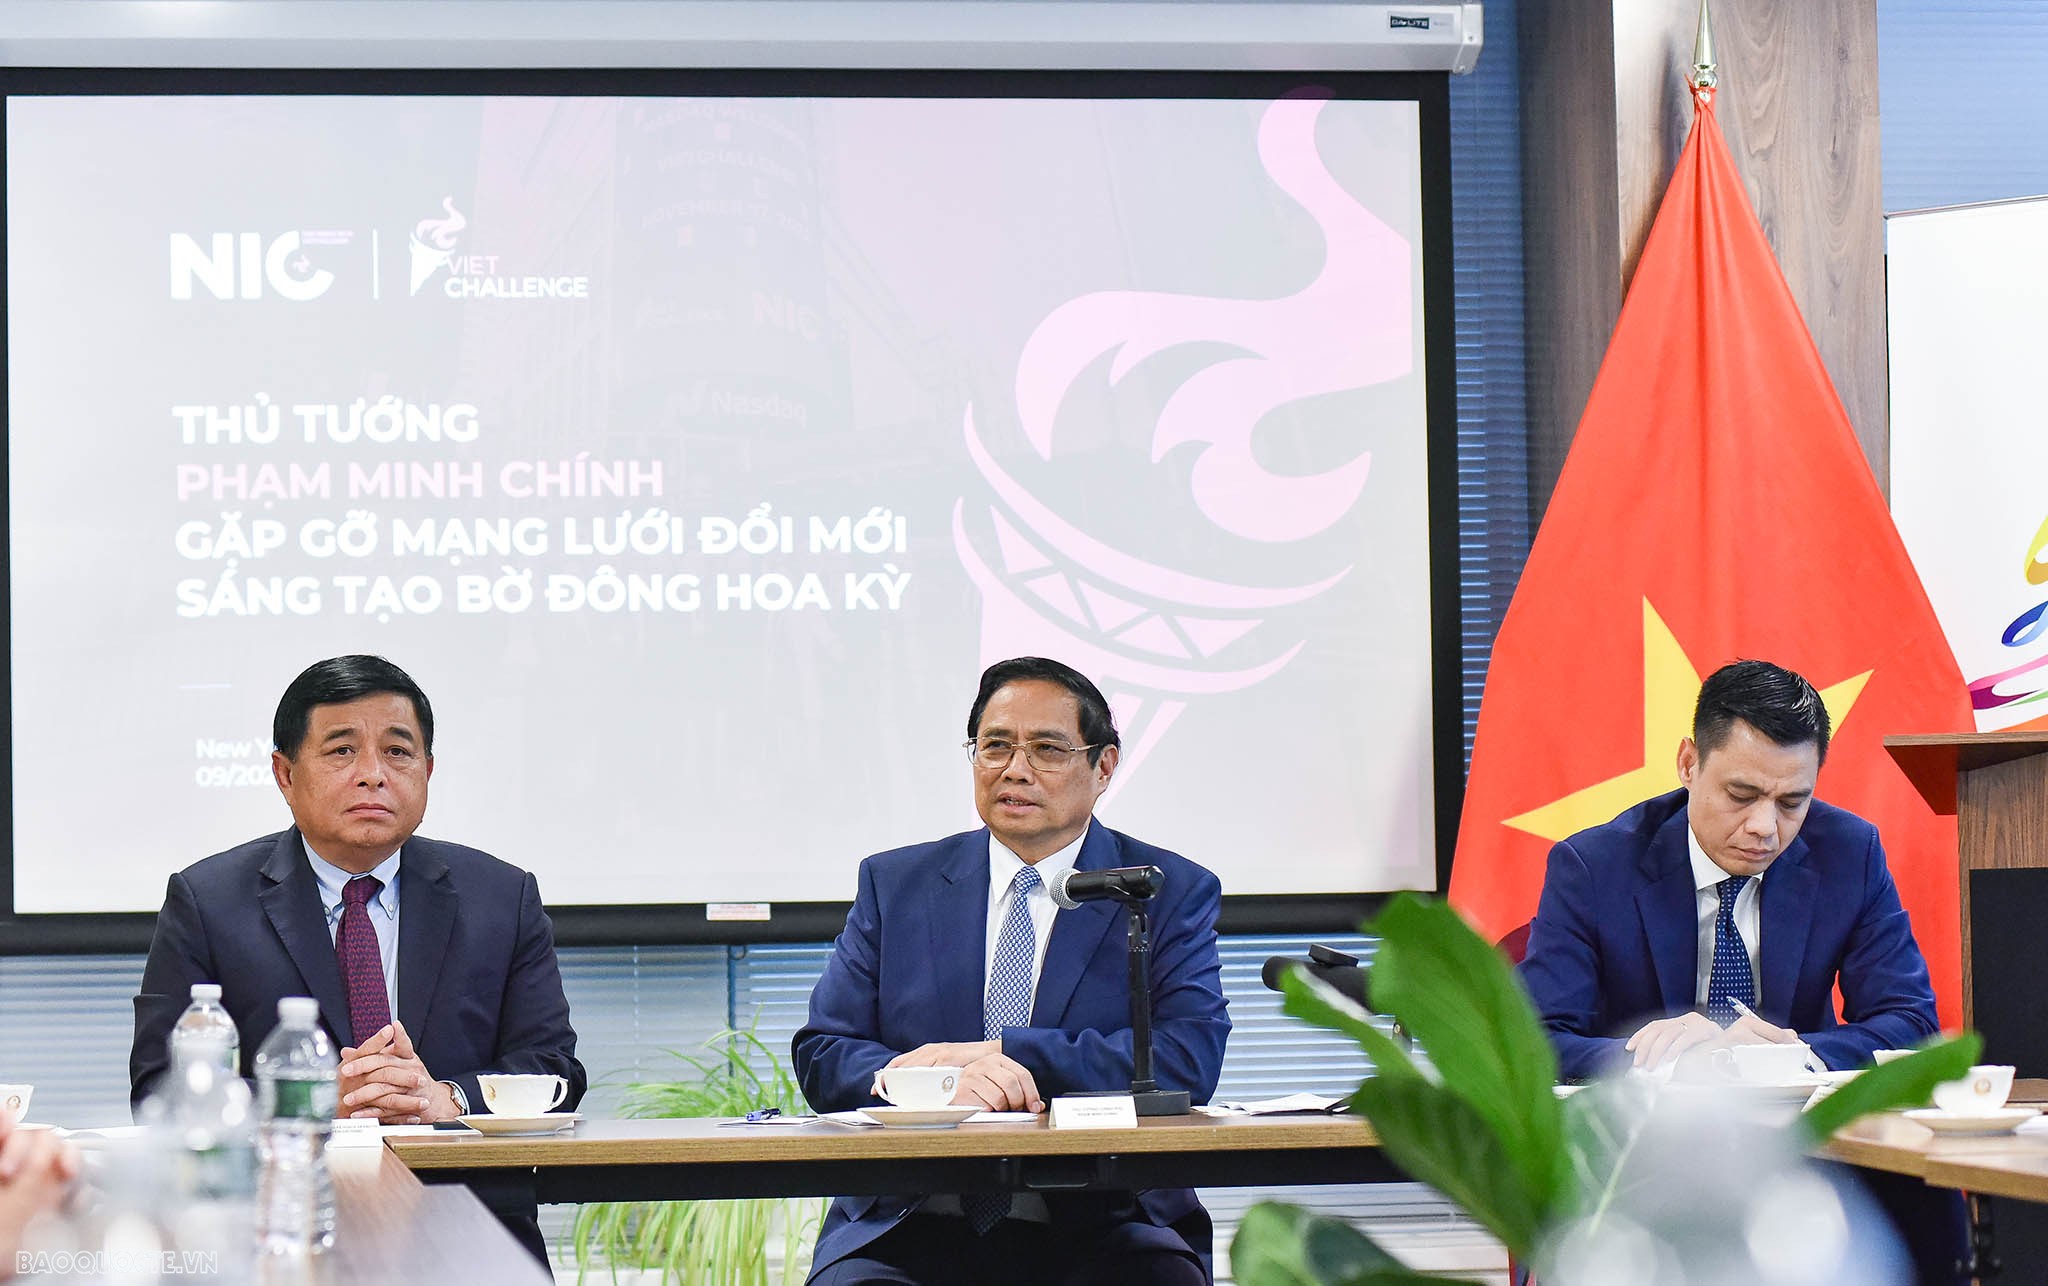 Thủ tướng Phạm Minh Chính gặp gỡ thành viên của Mạng lưới đổi mới sáng tạo Việt Nam tại Hoa Kỳ